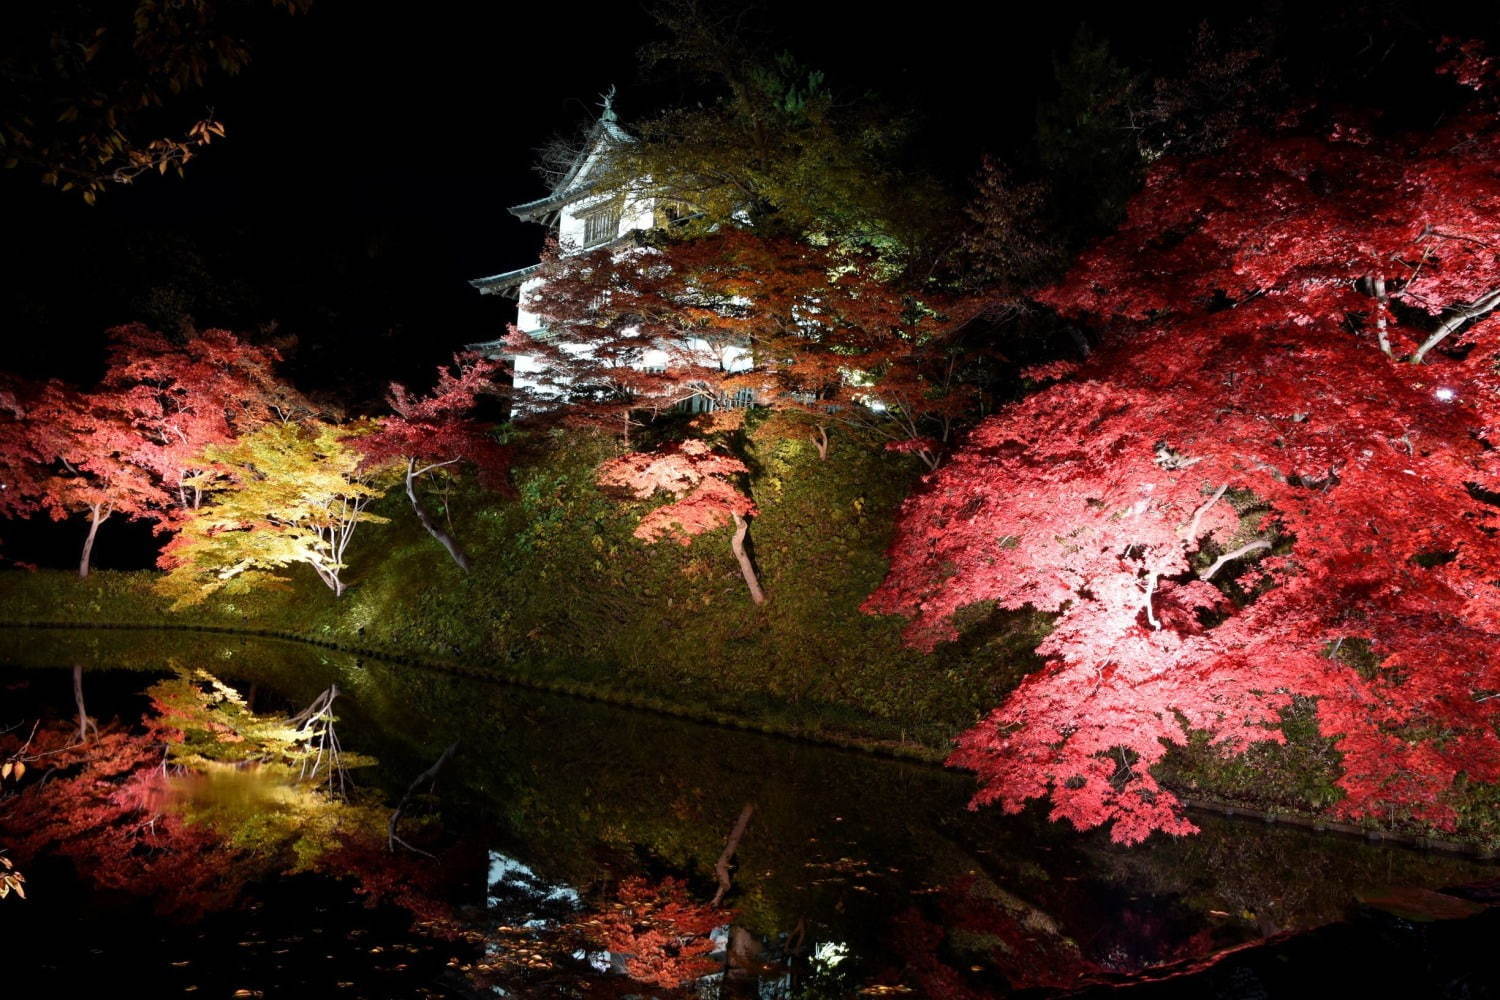 弘前城 菊と紅葉まつり 青森 弘前公園で 1 000本の楓 2600本の桜のライトアップも ファッションプレス